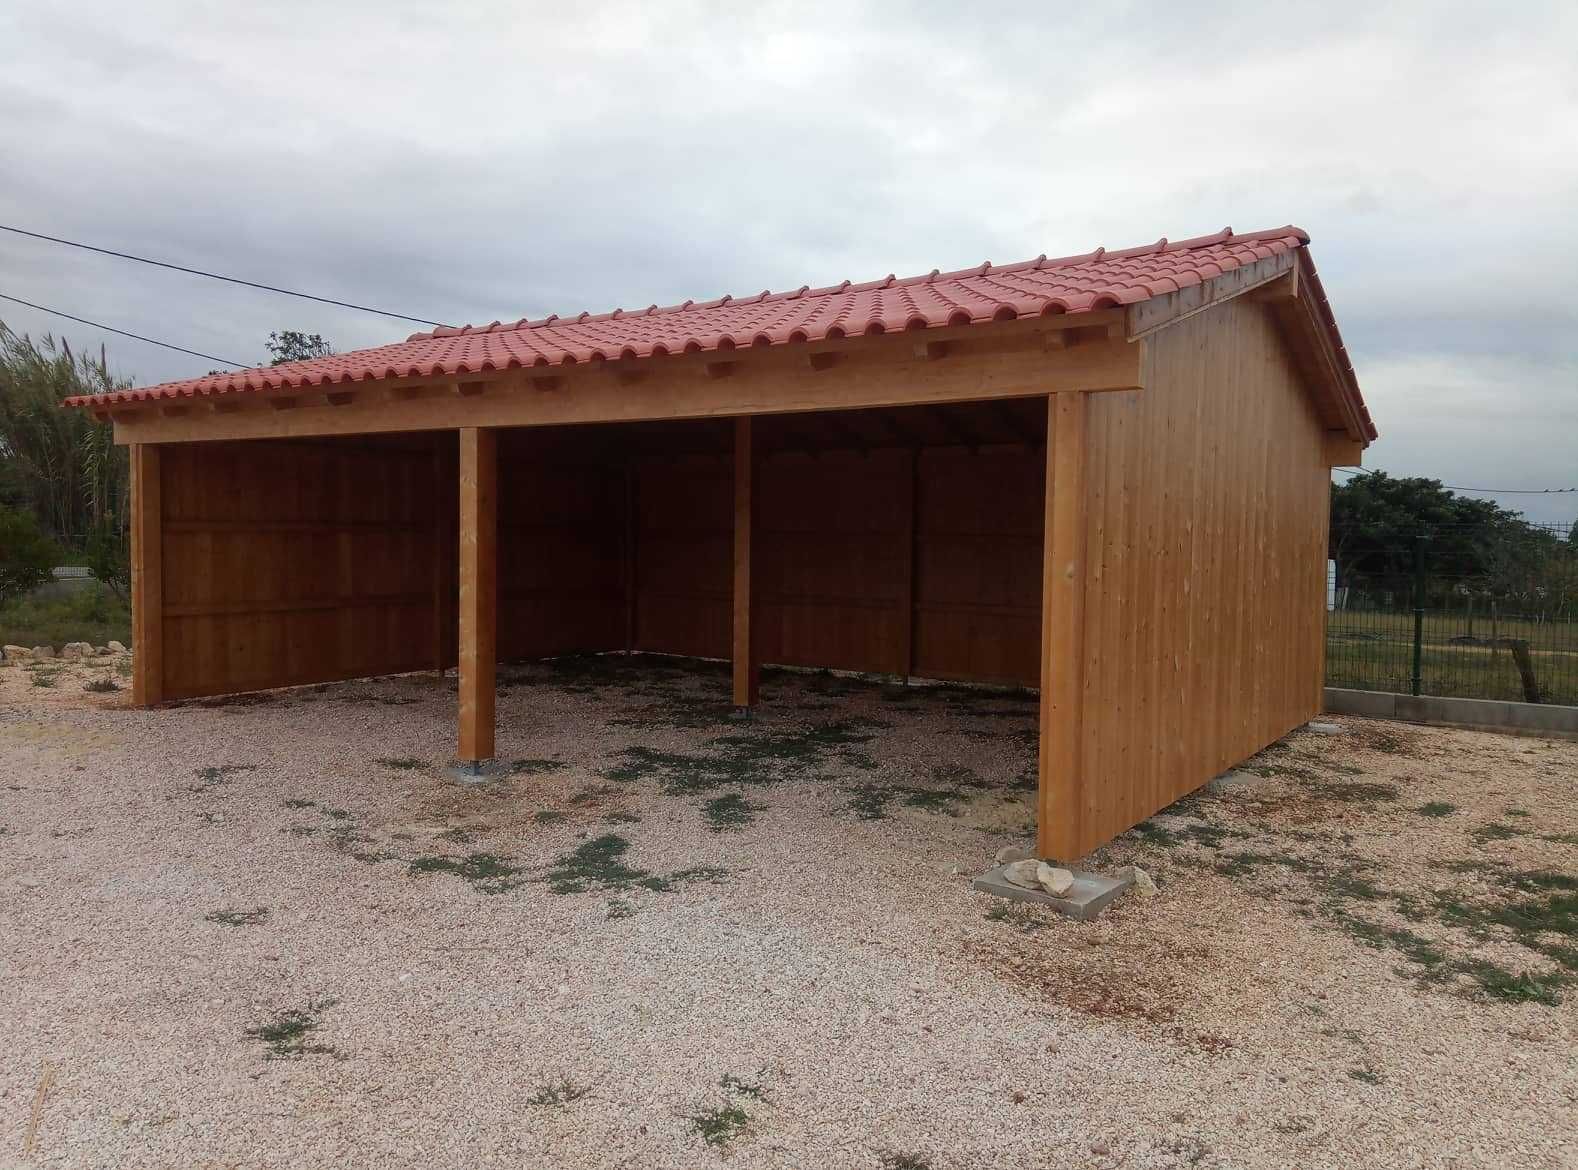 garagem / telheiro em madeira - Madeira&Conforto